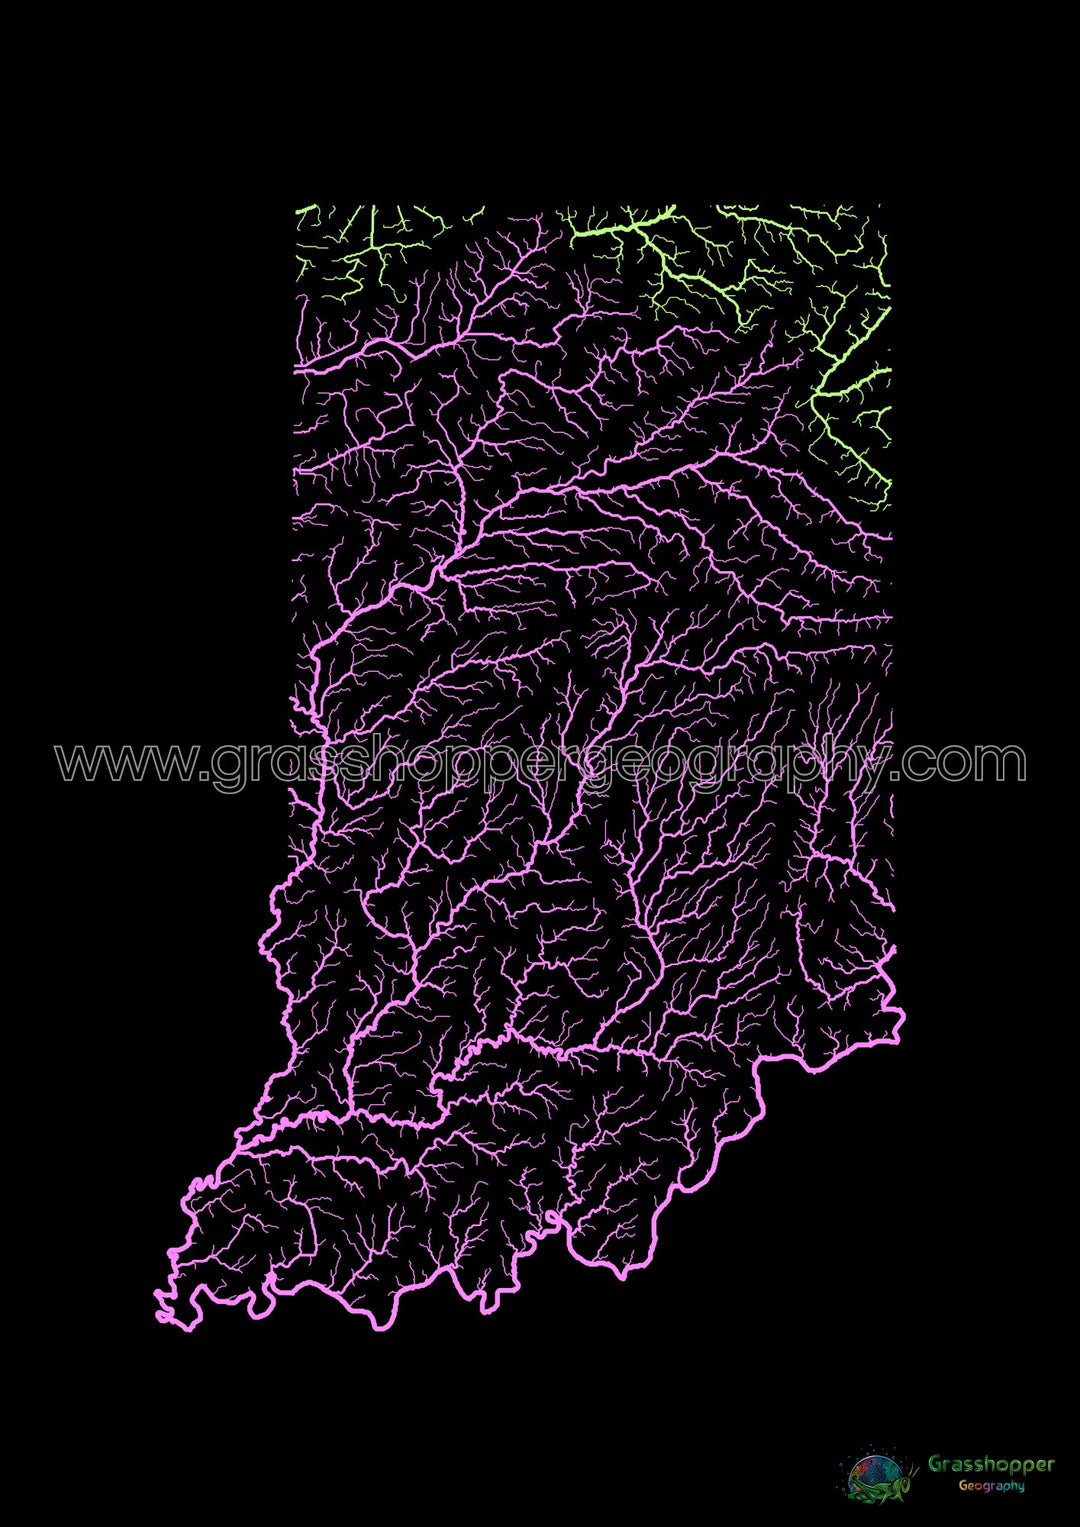 Indiana - Mapa de la cuenca fluvial, pastel sobre negro - Impresión de Bellas Artes